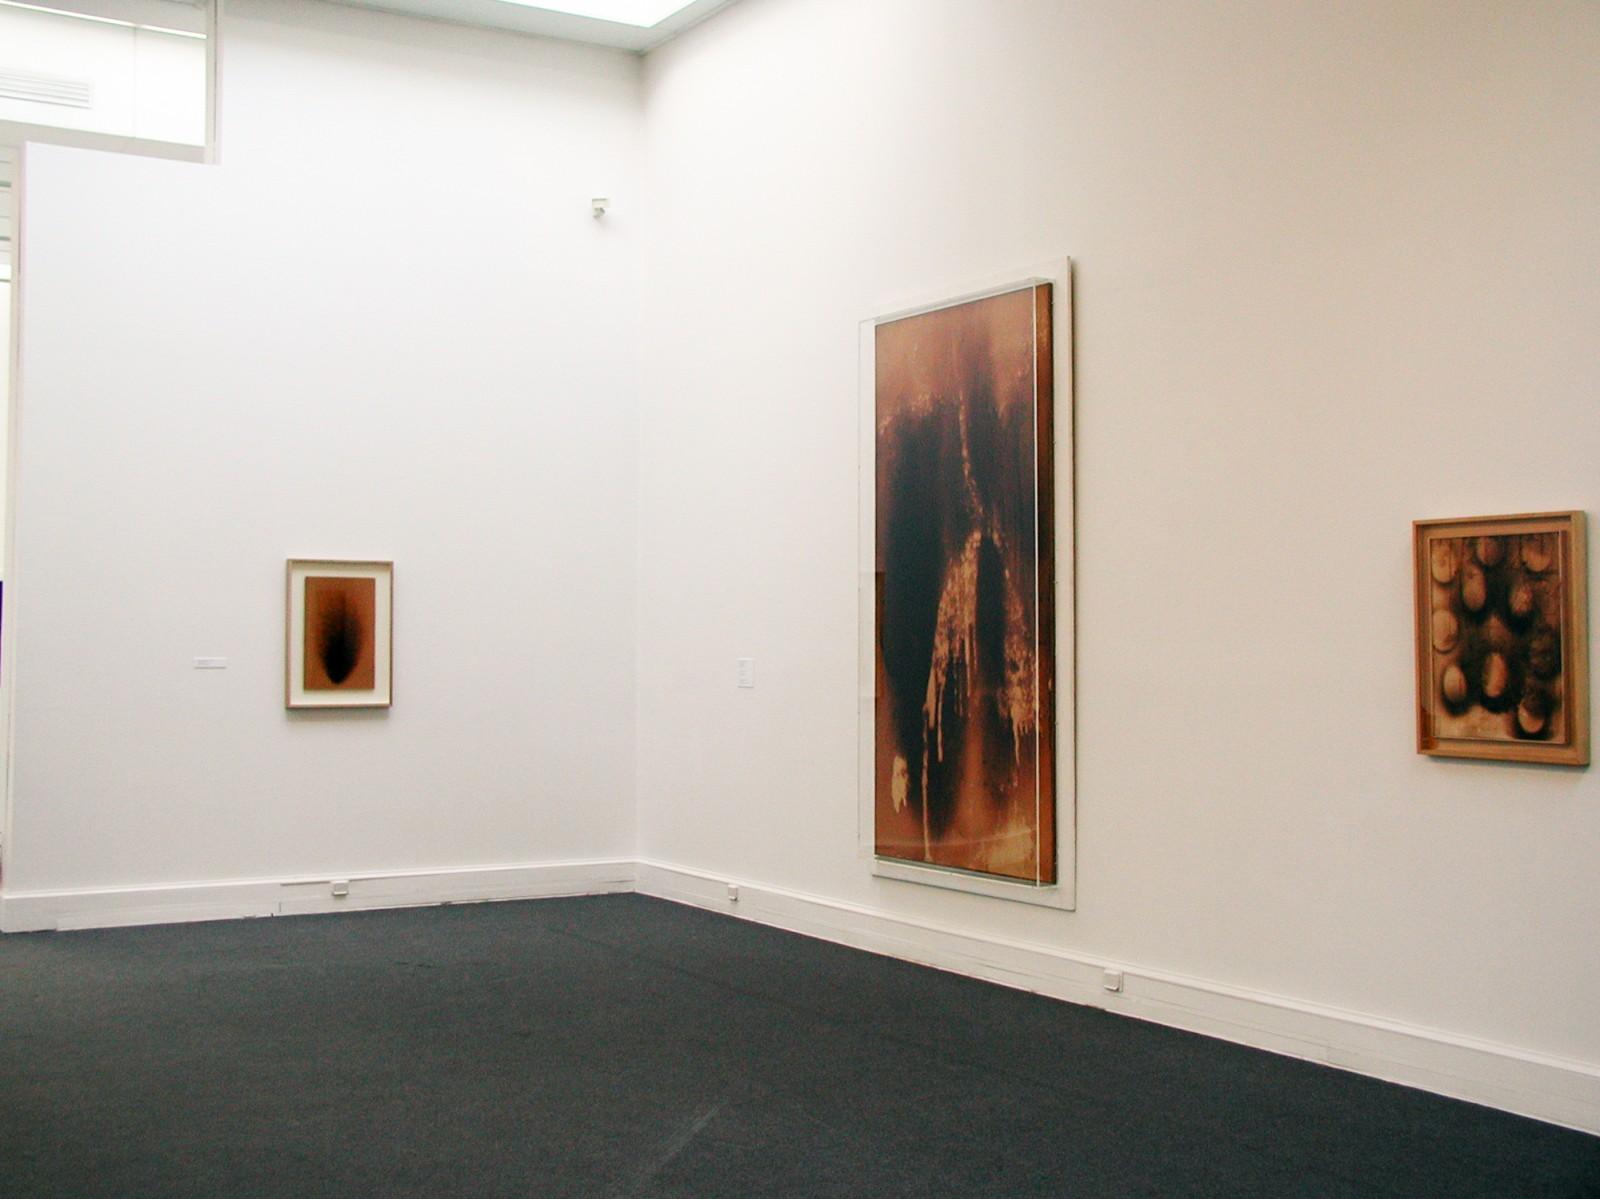 Vue de l'exposition, "Yves Klein, "La vita, la vita stessa che é l'arte assoluta", Museo Pecci, 2000